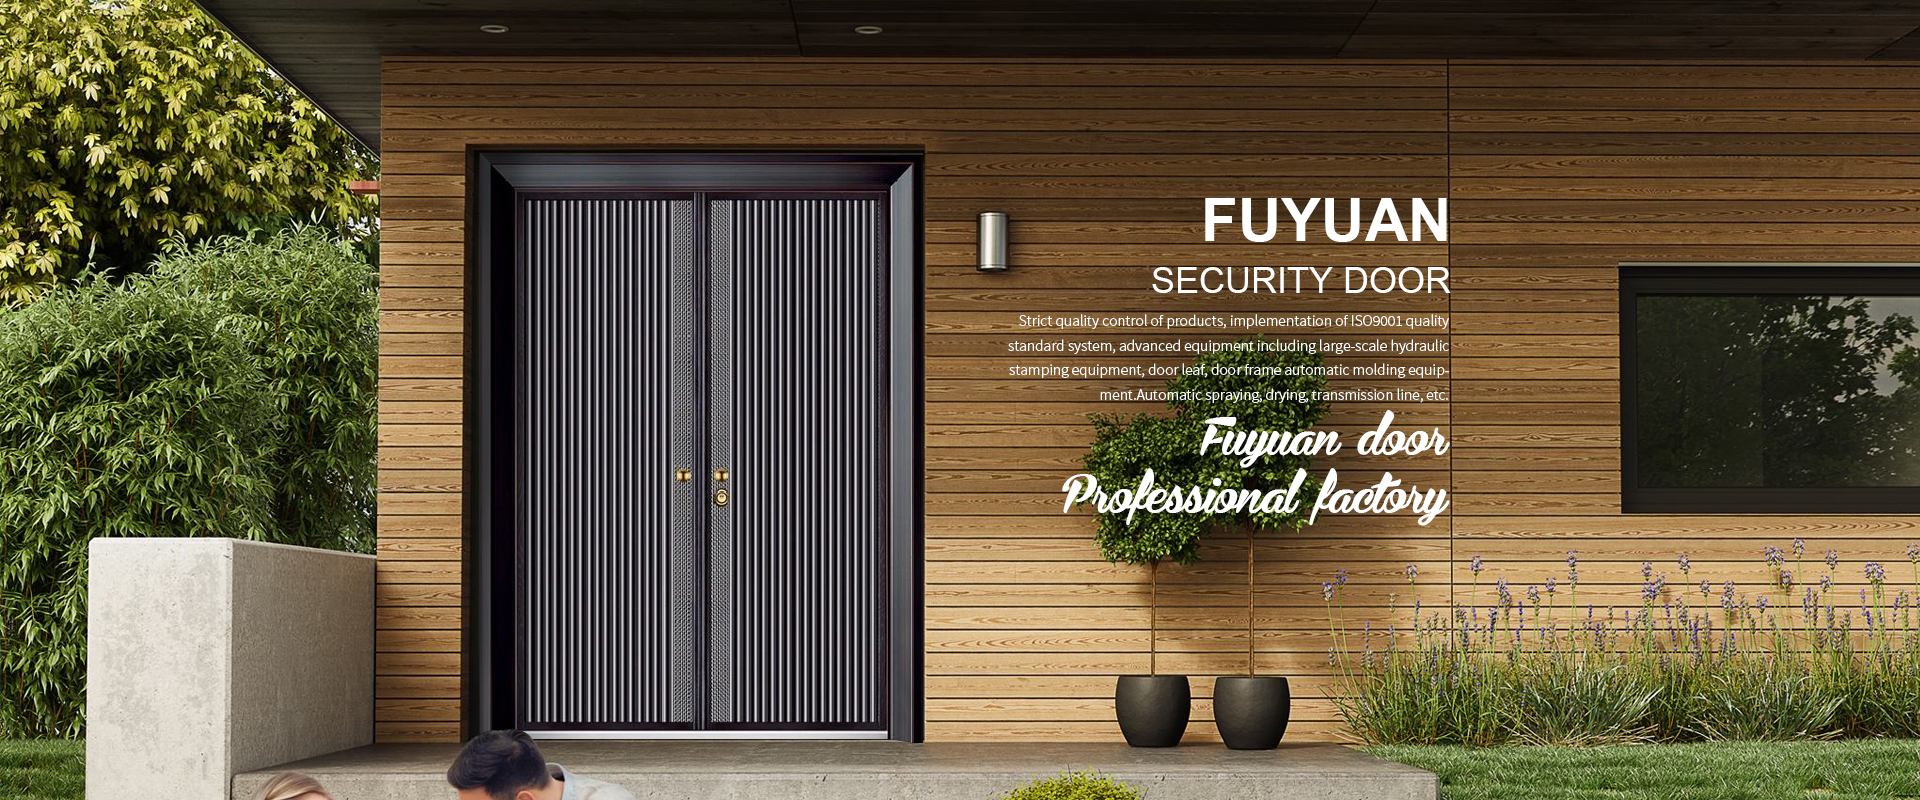 Fuyuan Security Door